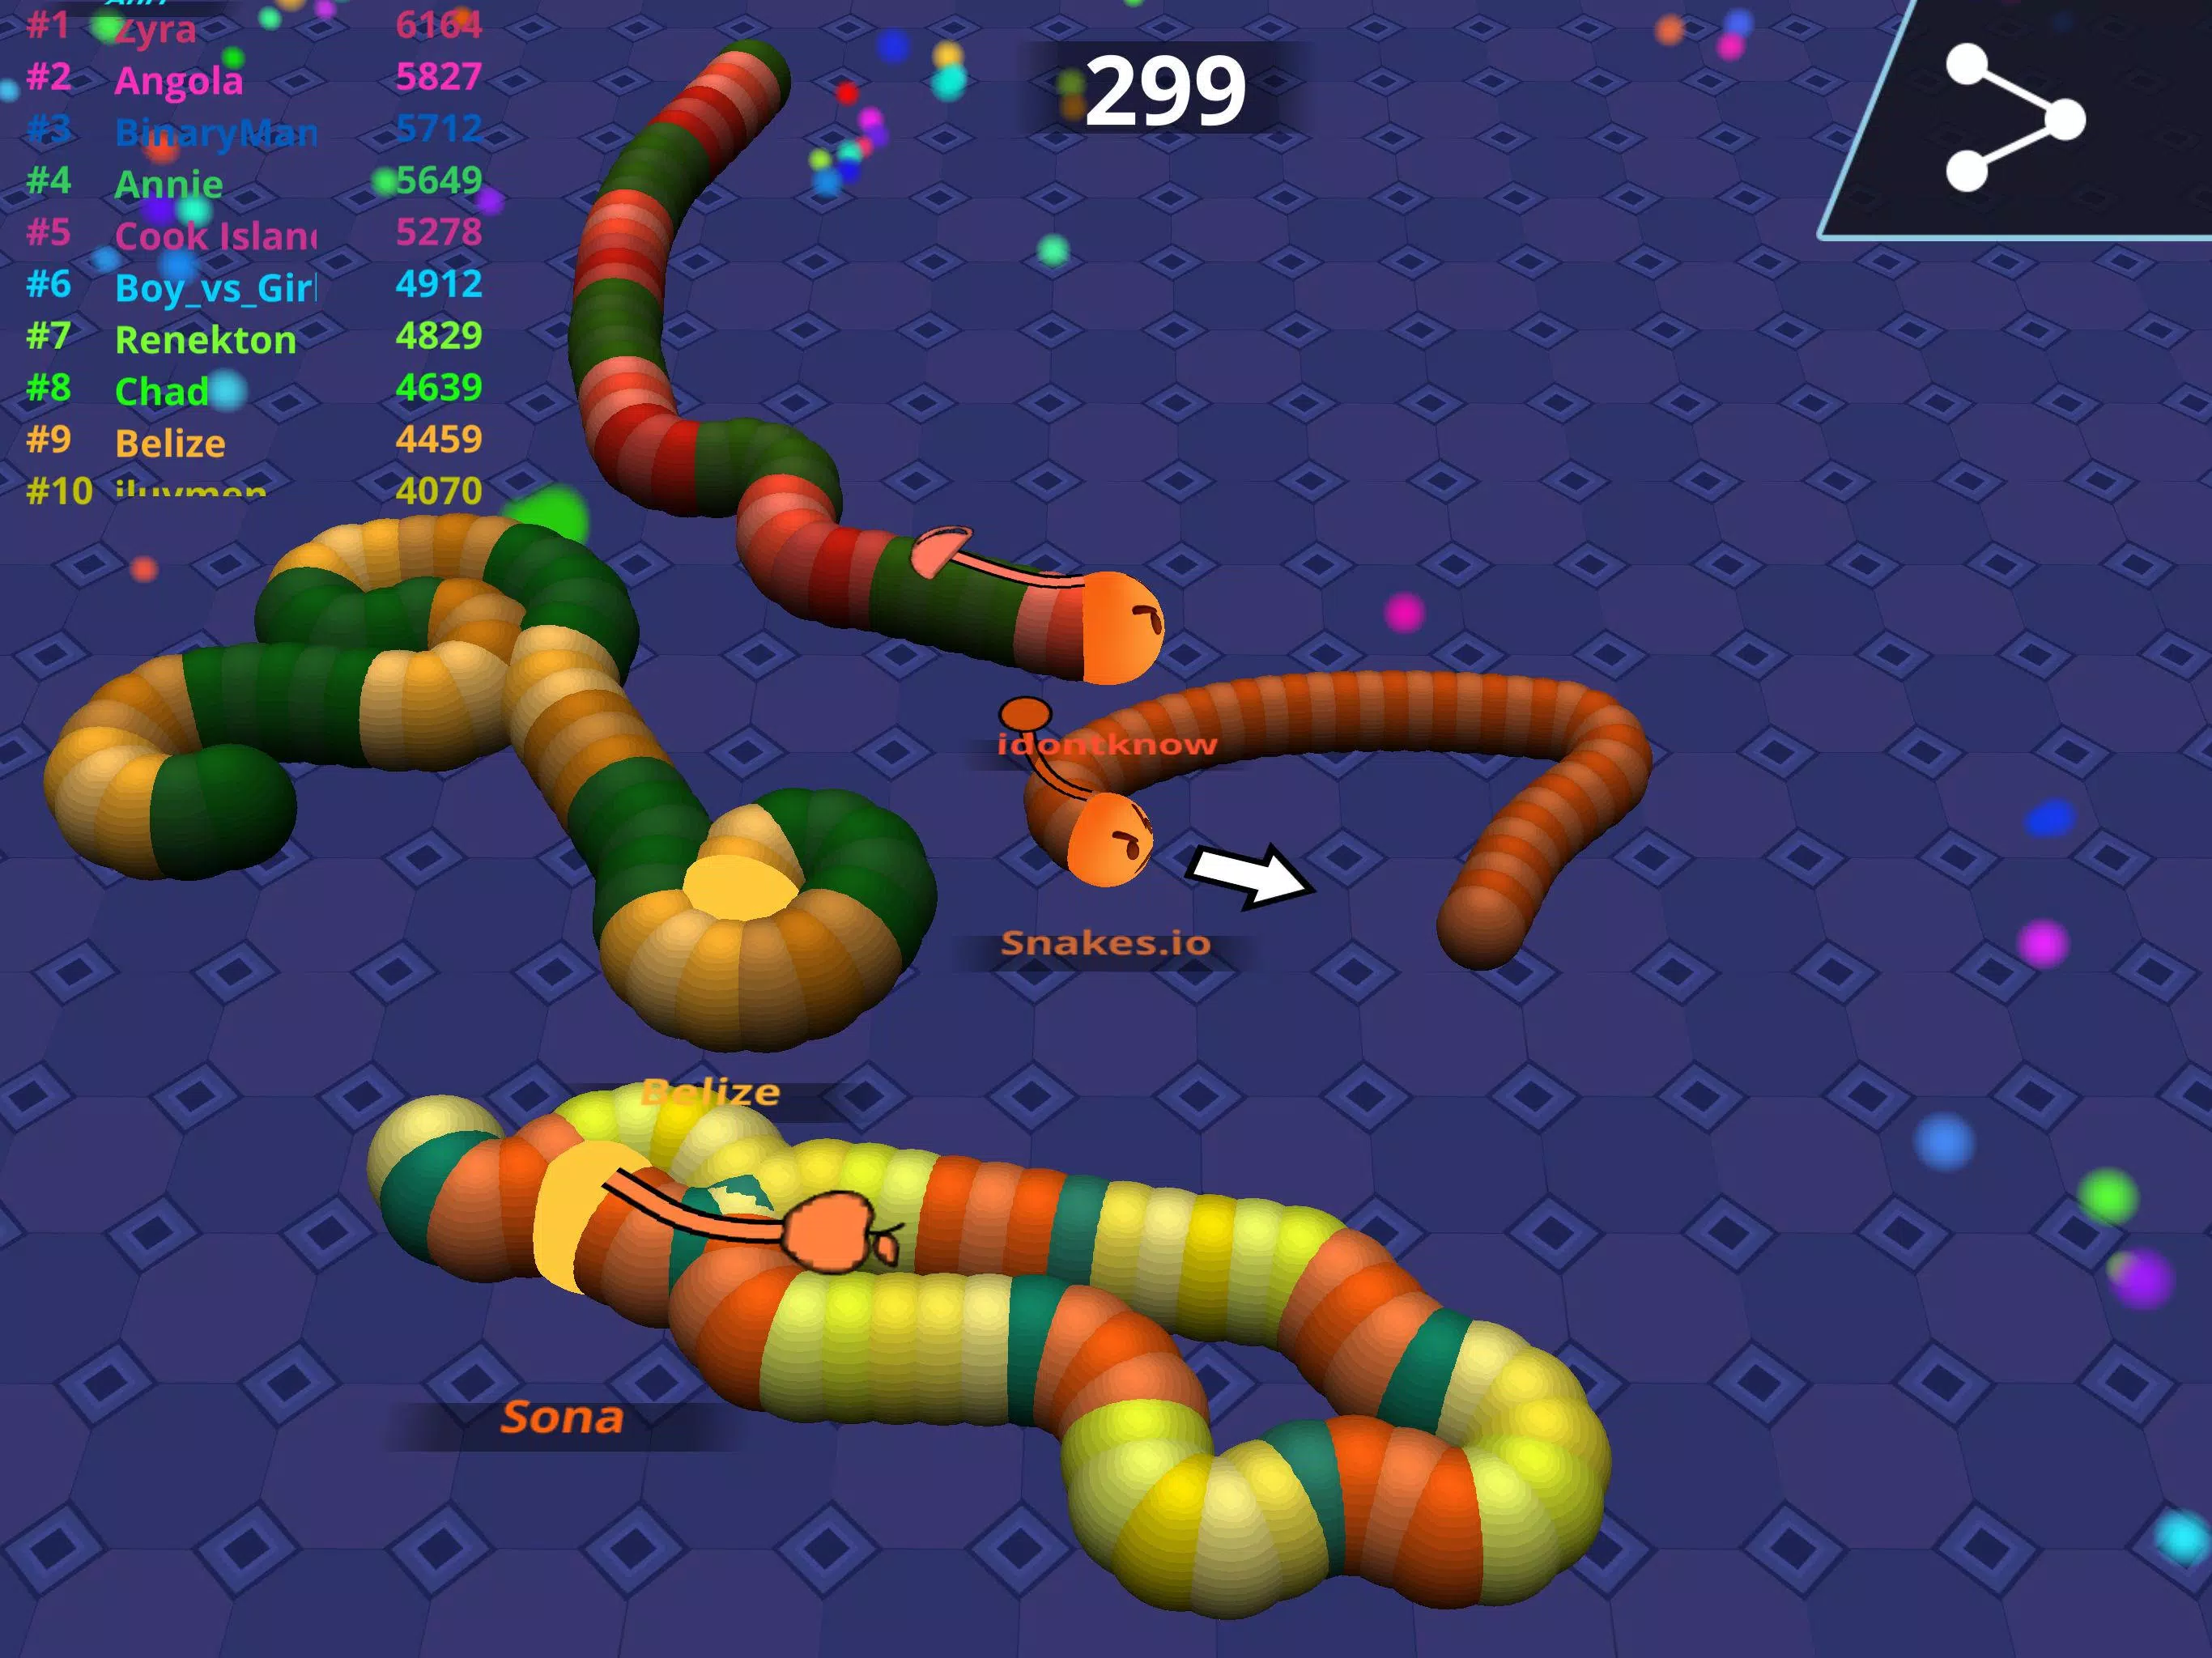 Snake io 3D — Jogue de graça em